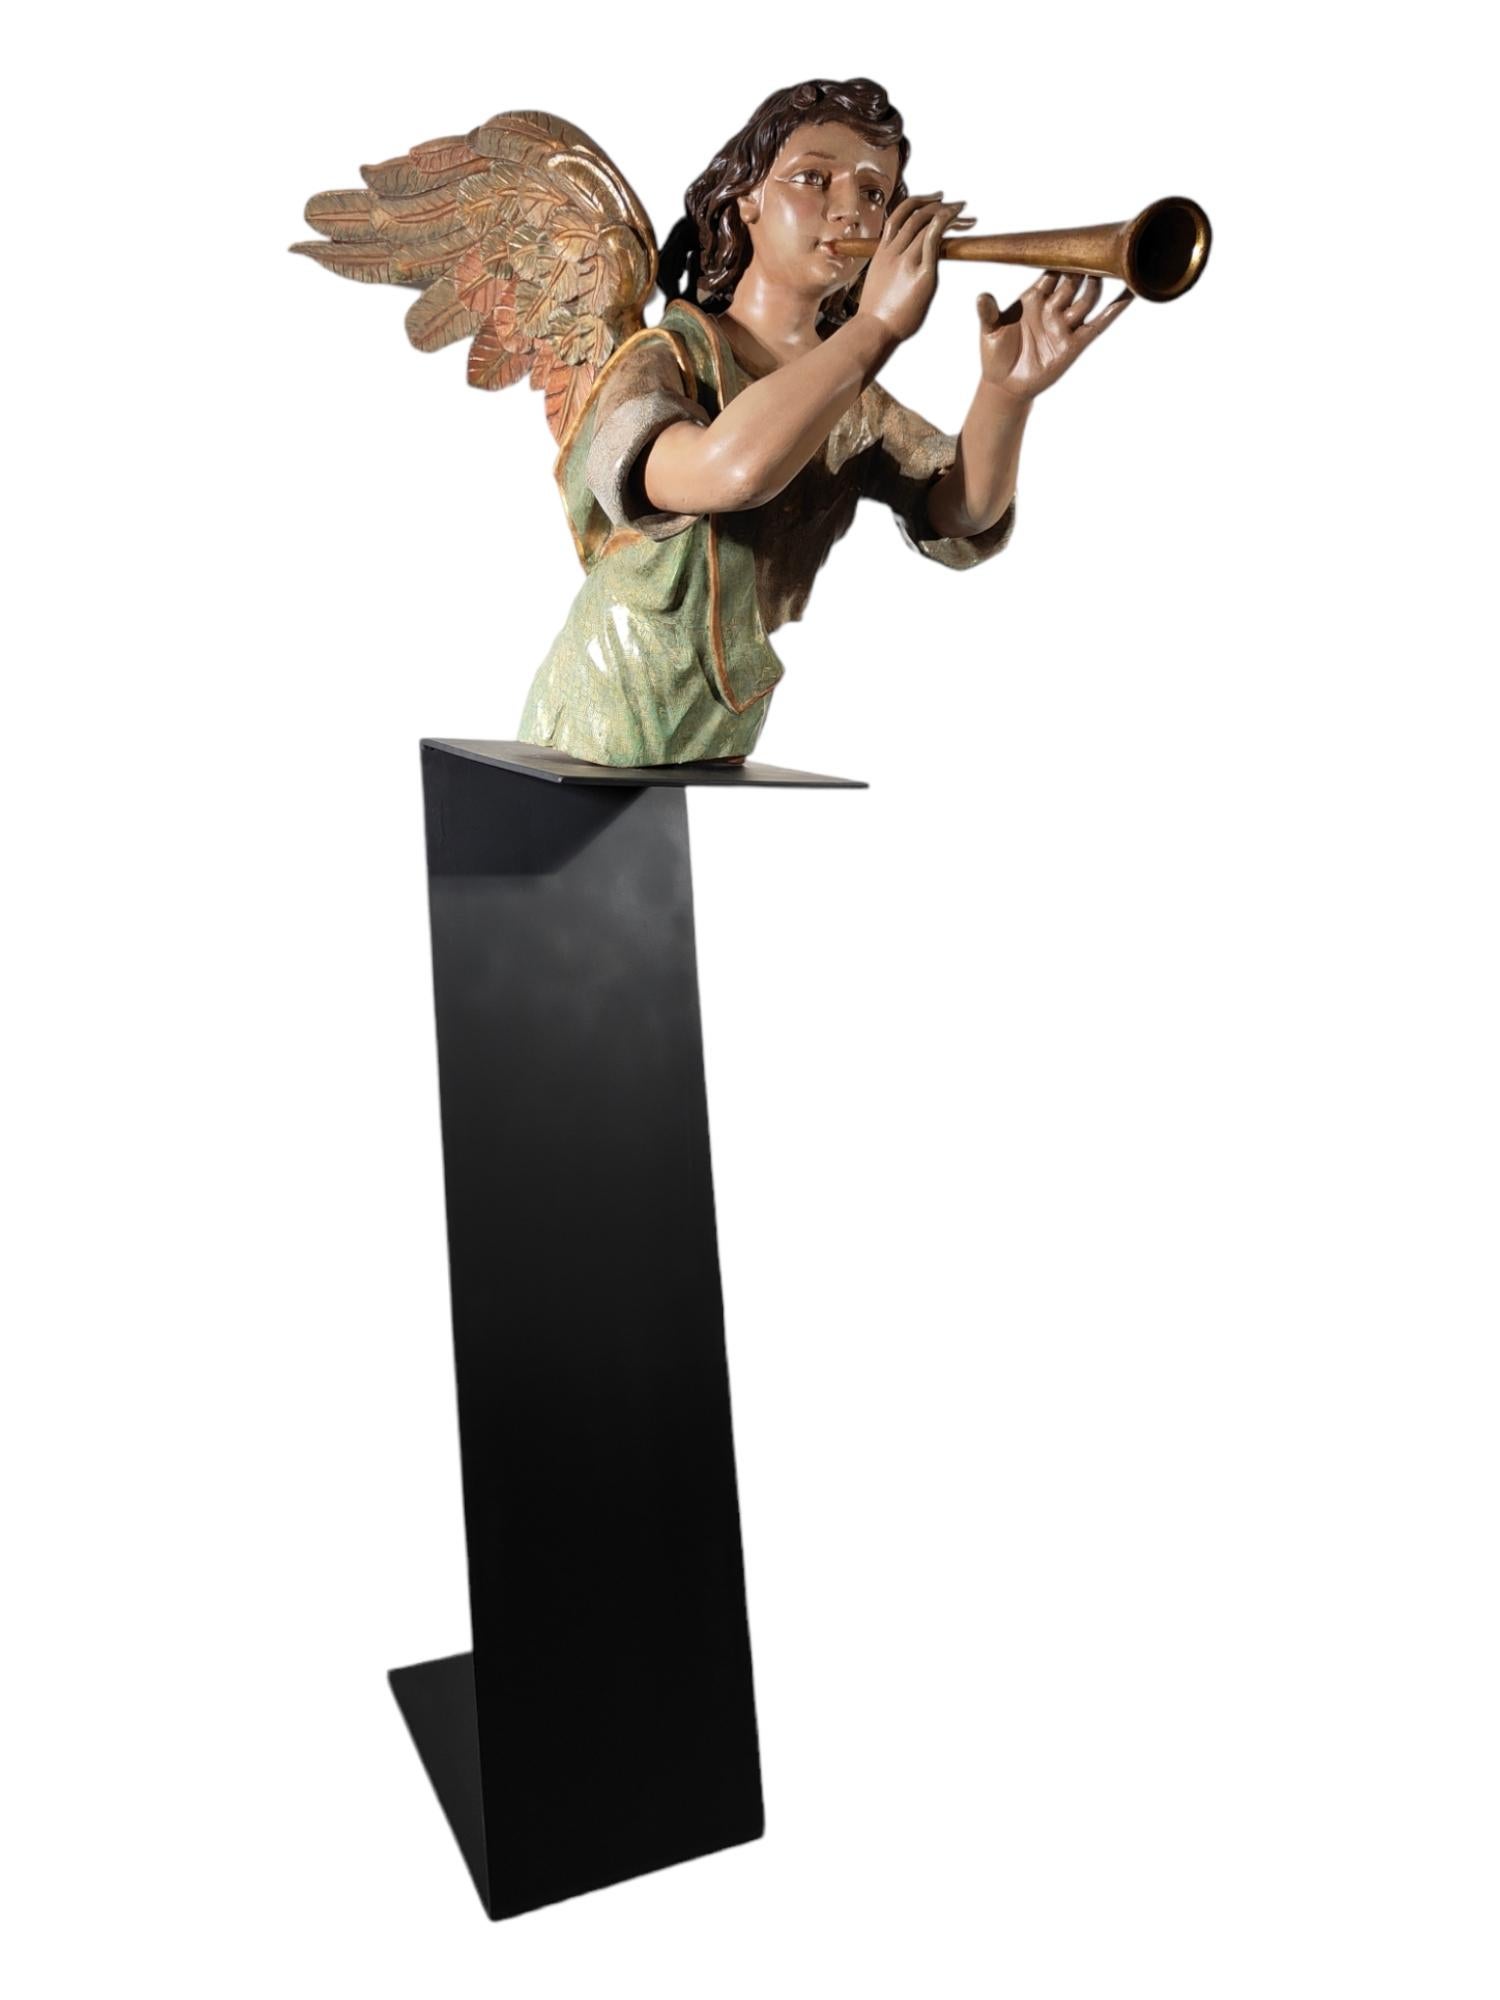 Ange majestueux du 17e siècle
Important ange en bois sculpté, doré et polychrome du XVIIe siècle provenant du chœur d'une église en Espagne. Il est de très bonne qualité (voir le dessin du costume). En très bon état. Doré à l'or fin 24 carats. La